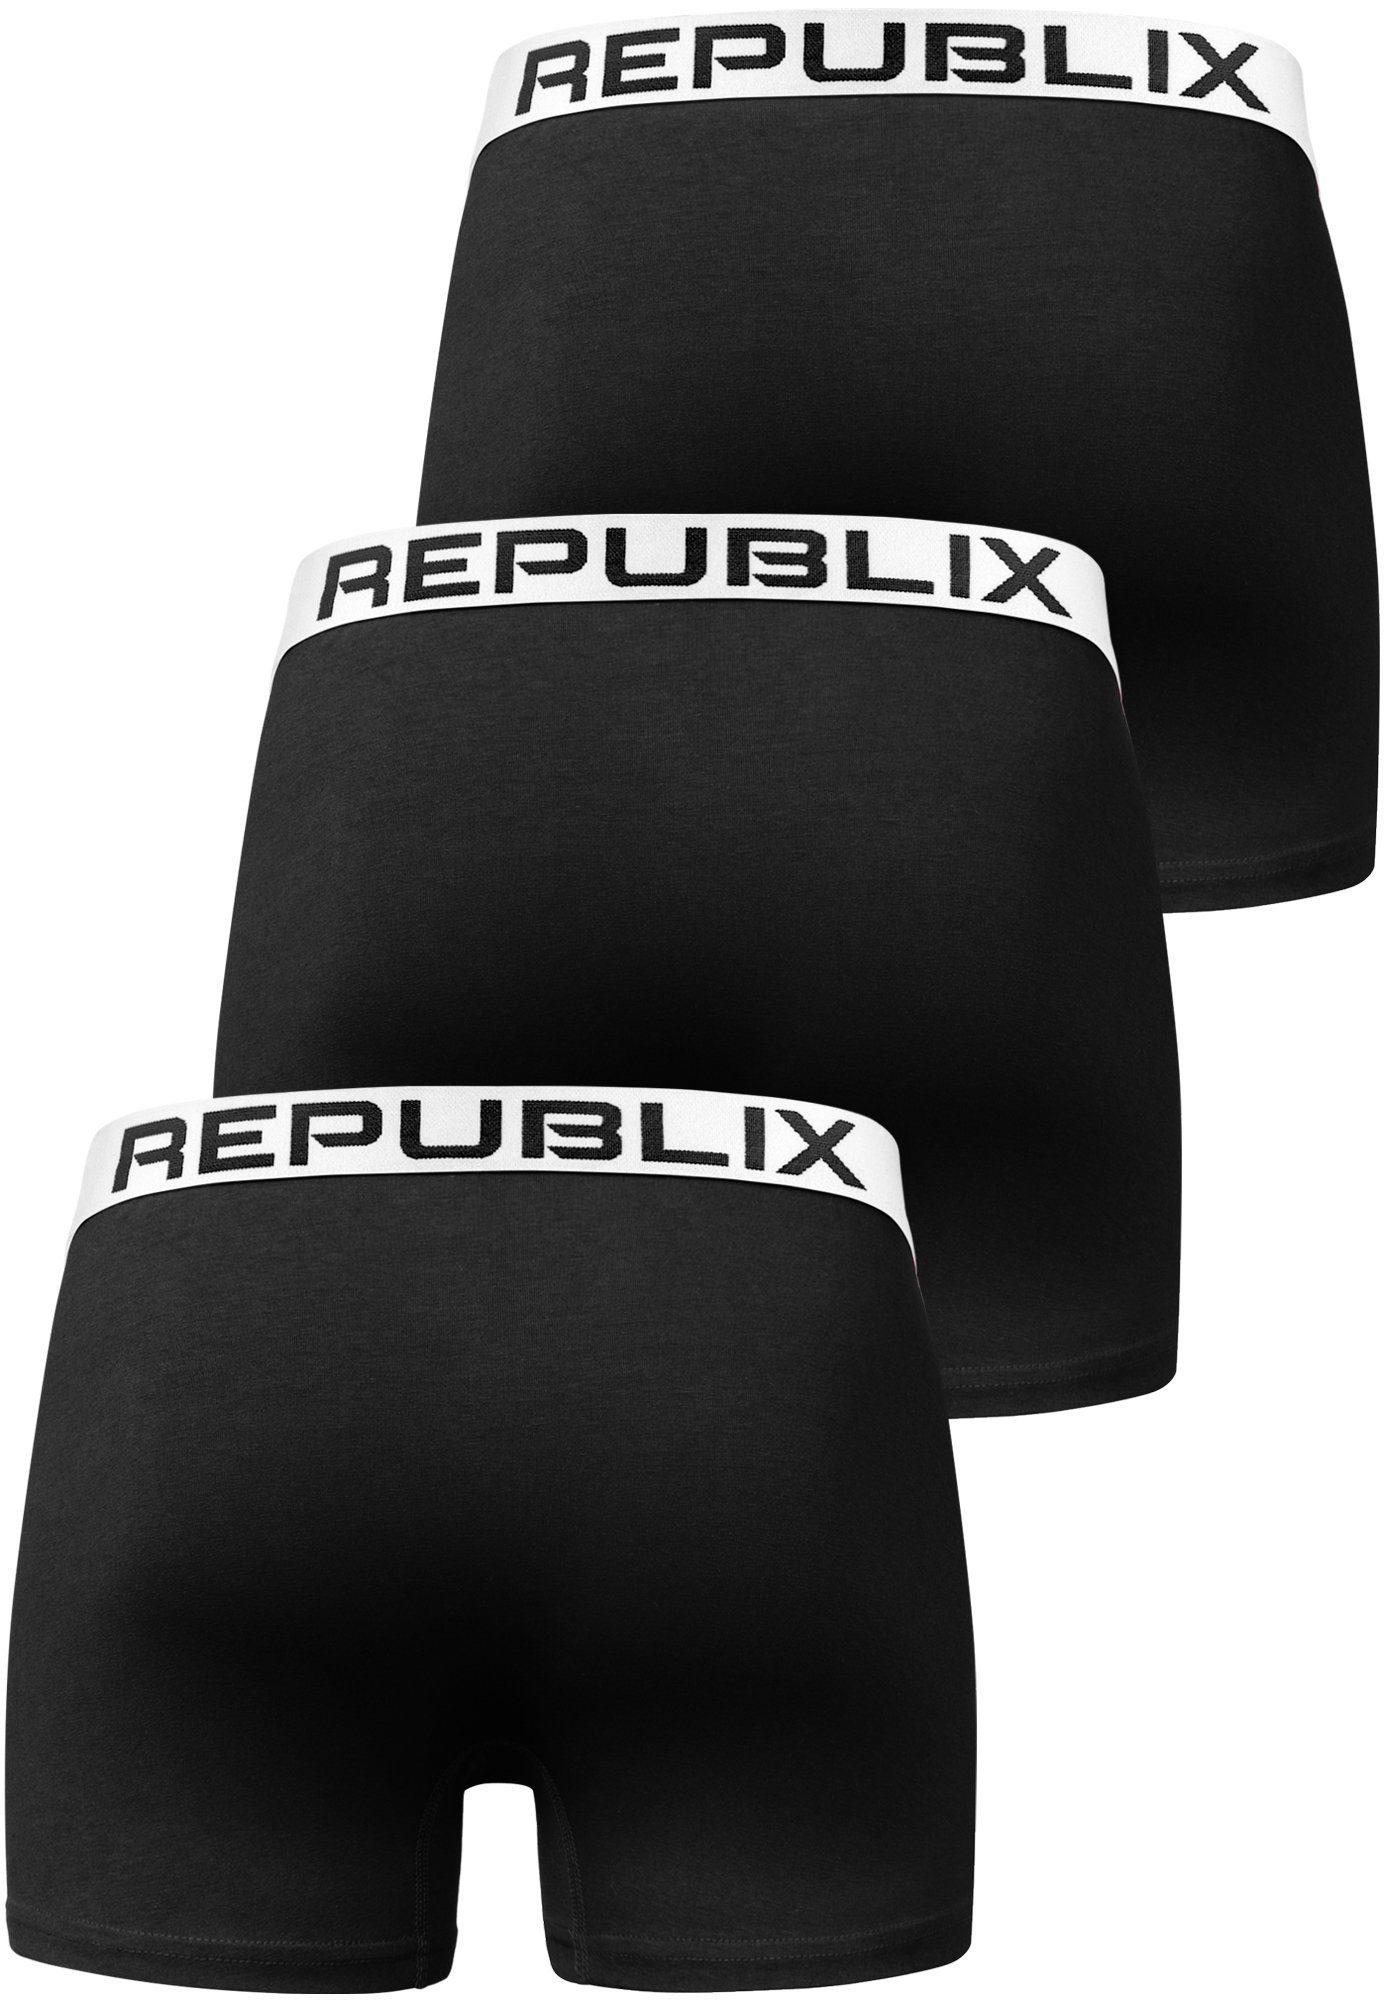 REPUBLIX Boxershorts DON (3er-Pack) Baumwolle Herren Schwarz/Weiß Unterhose Männer Unterwäsche